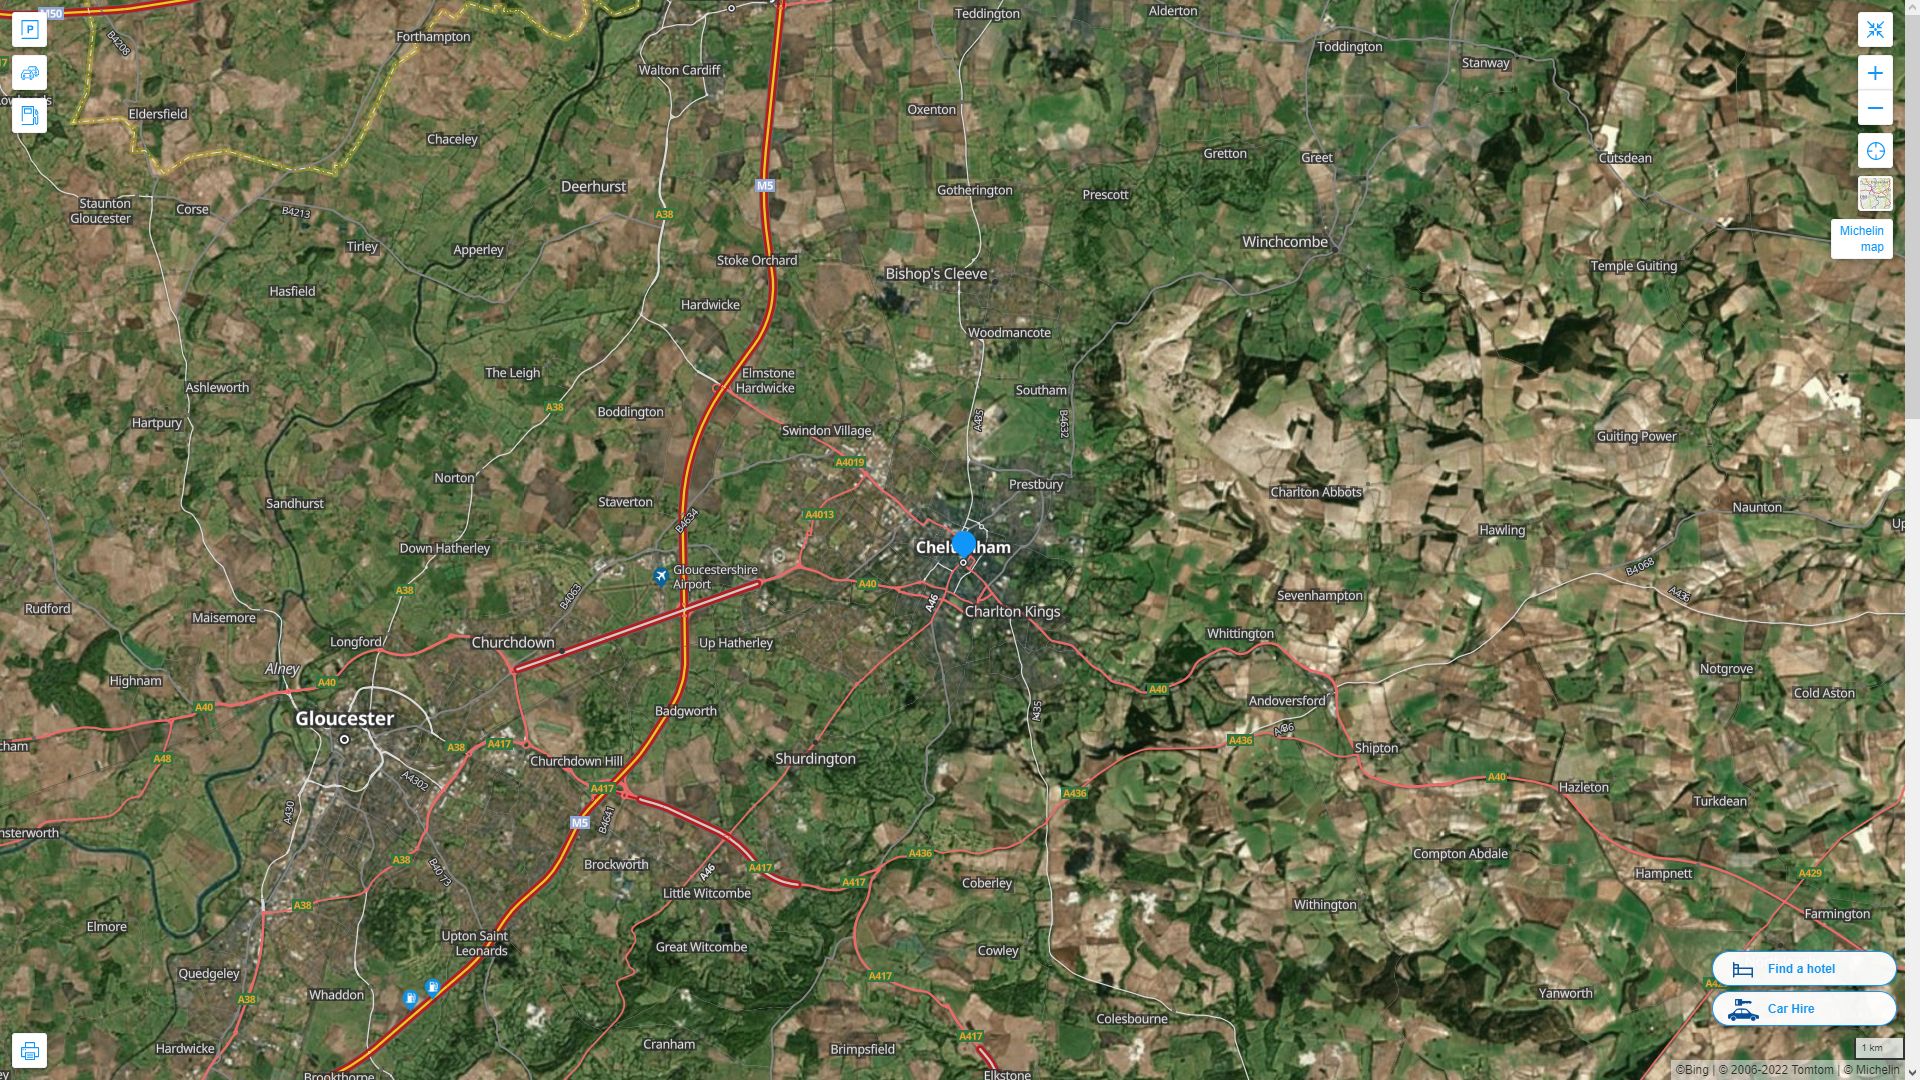 Cheltenham Royaume Uni Autoroute et carte routiere avec vue satellite